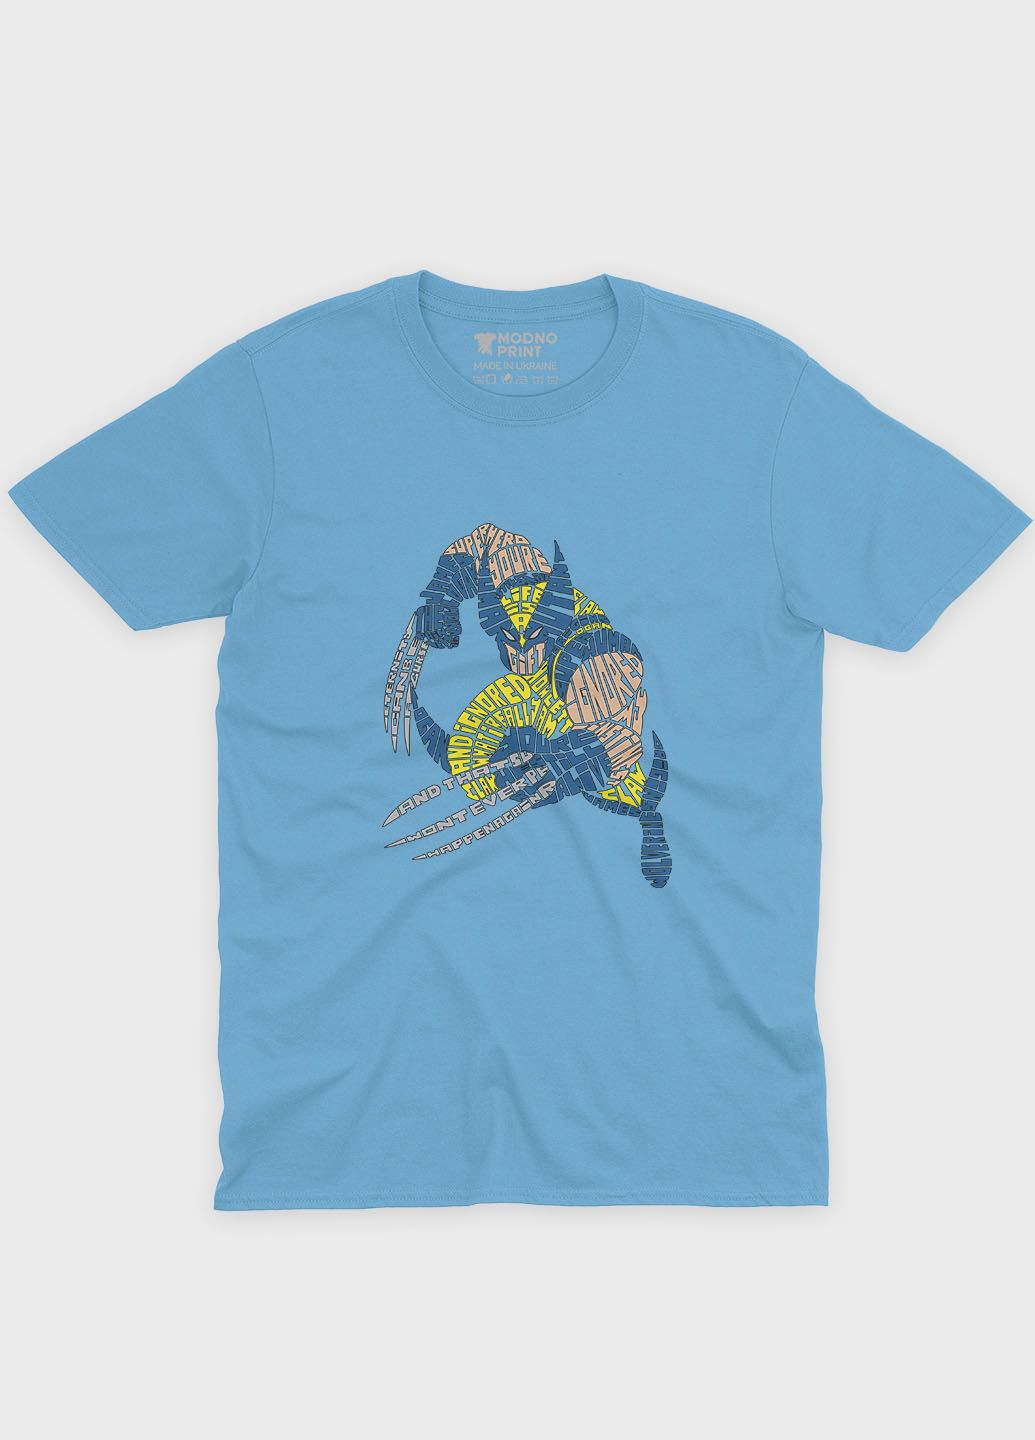 Голубая демисезонная футболка для девочки с принтом супергероя – росомаха (ts001-1-lbl-006-021-001-g) Modno